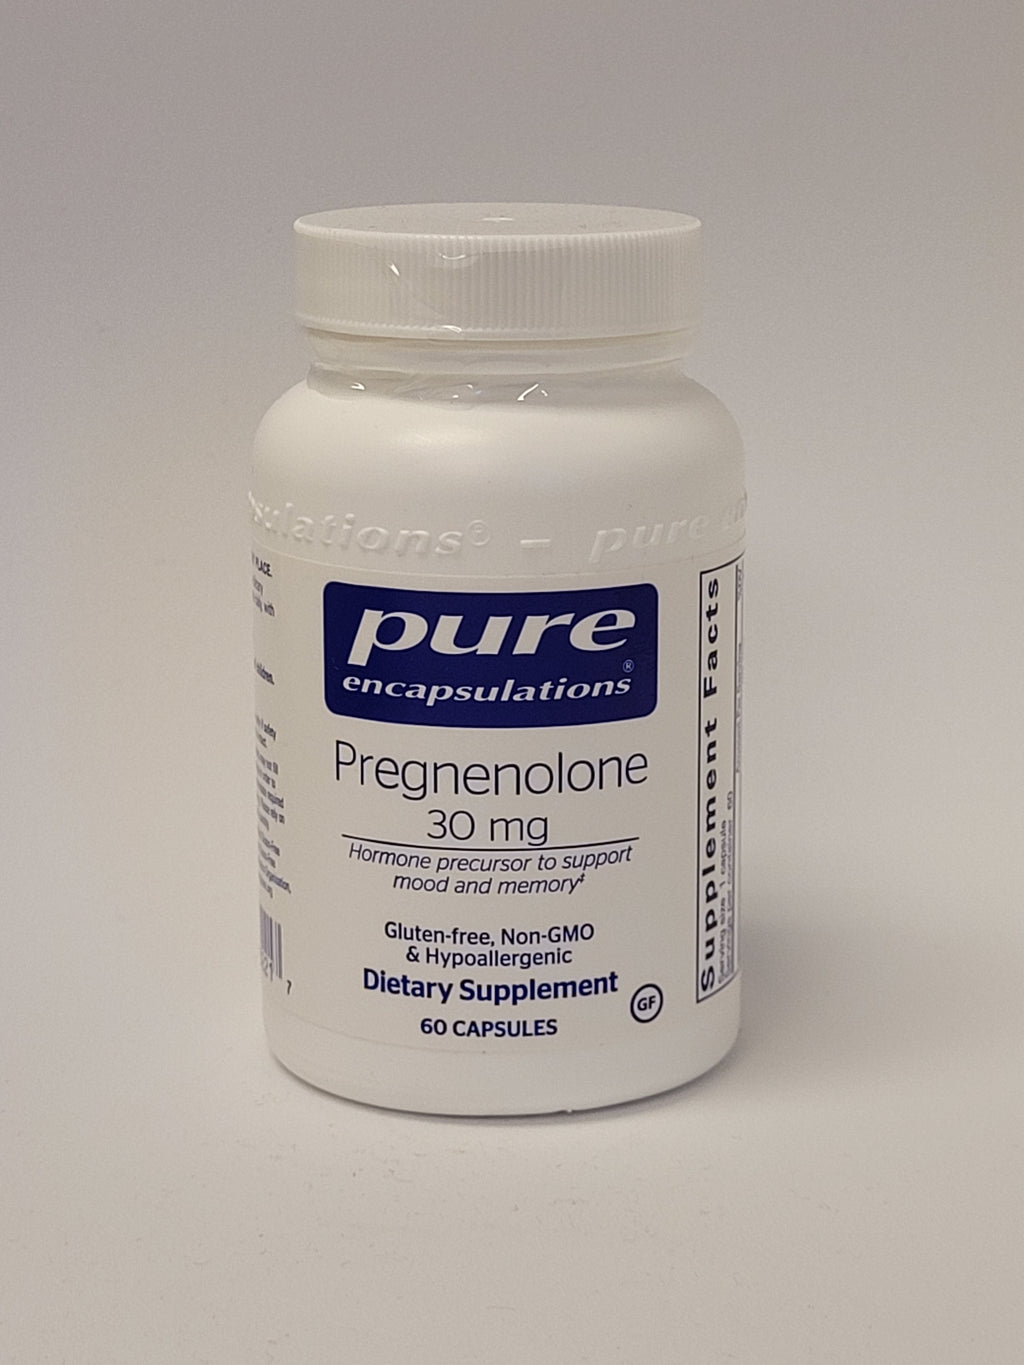 Pregnenolone 30 mg capsules